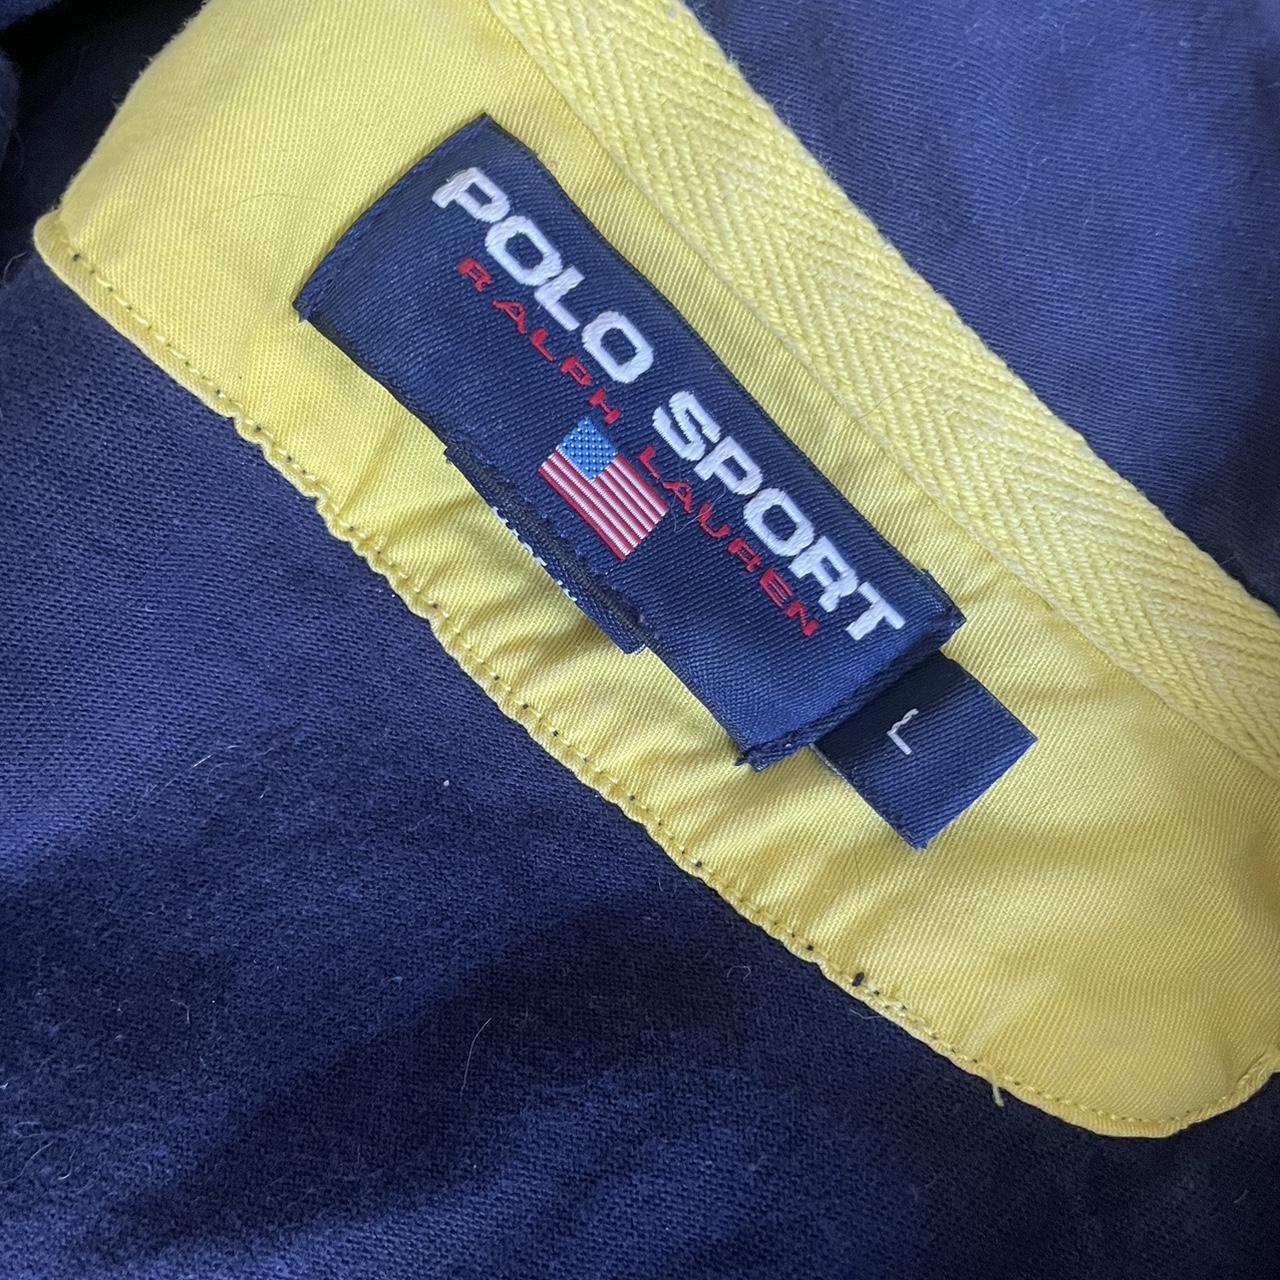 Ralph Lauren Men's Polo-shirts | Depop